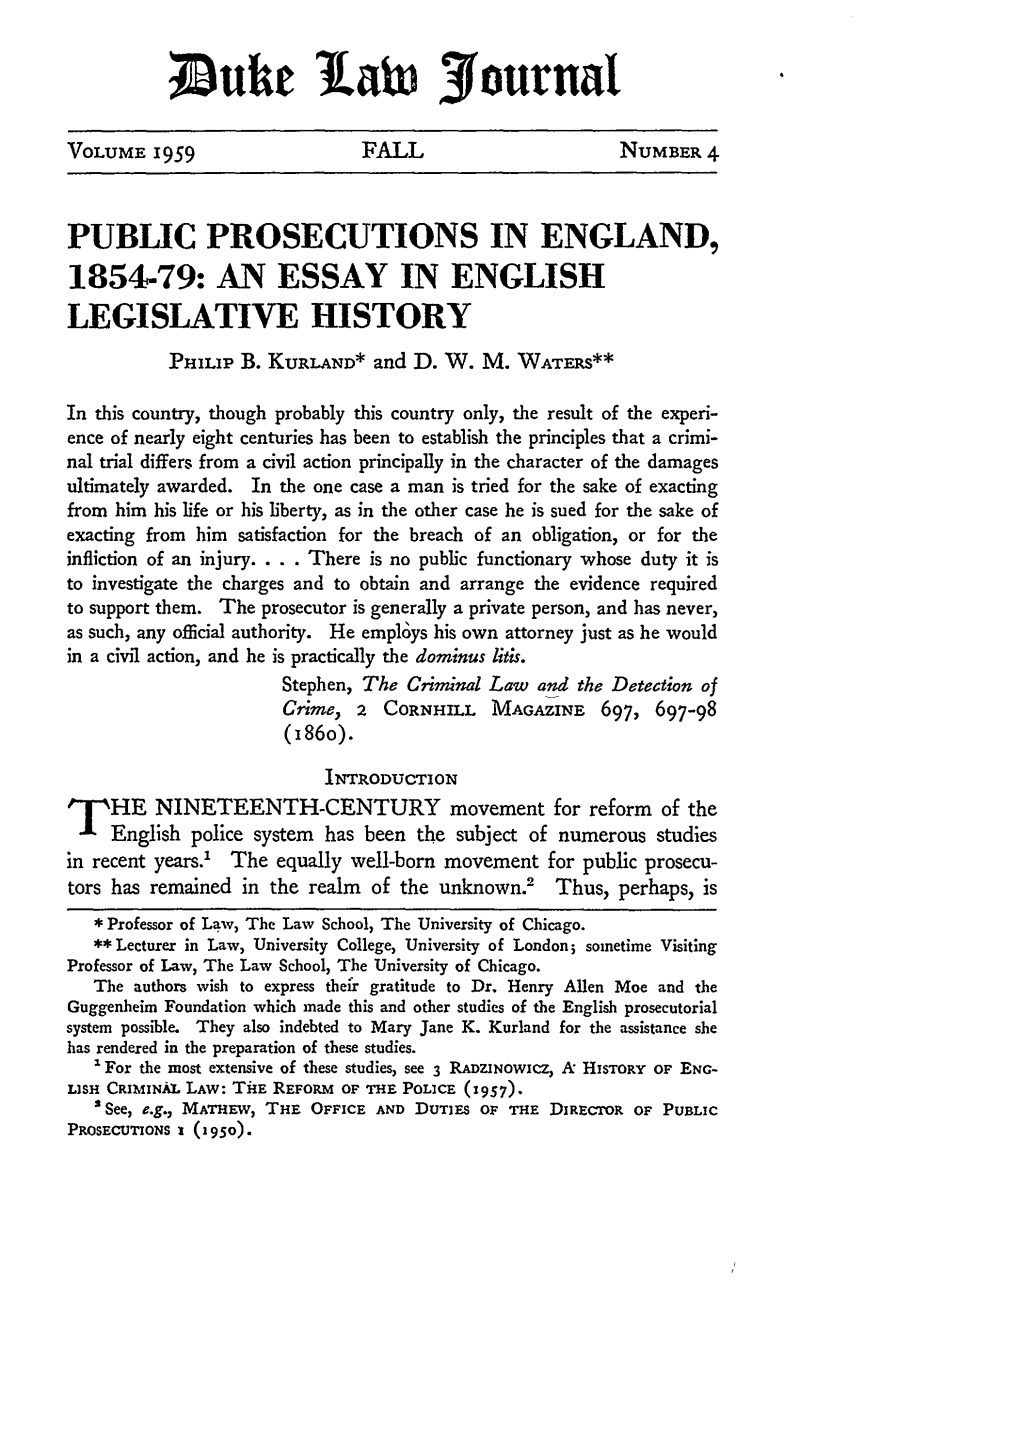 Public Prosecutions in England, 1854-79: an Essay in English Legislative History